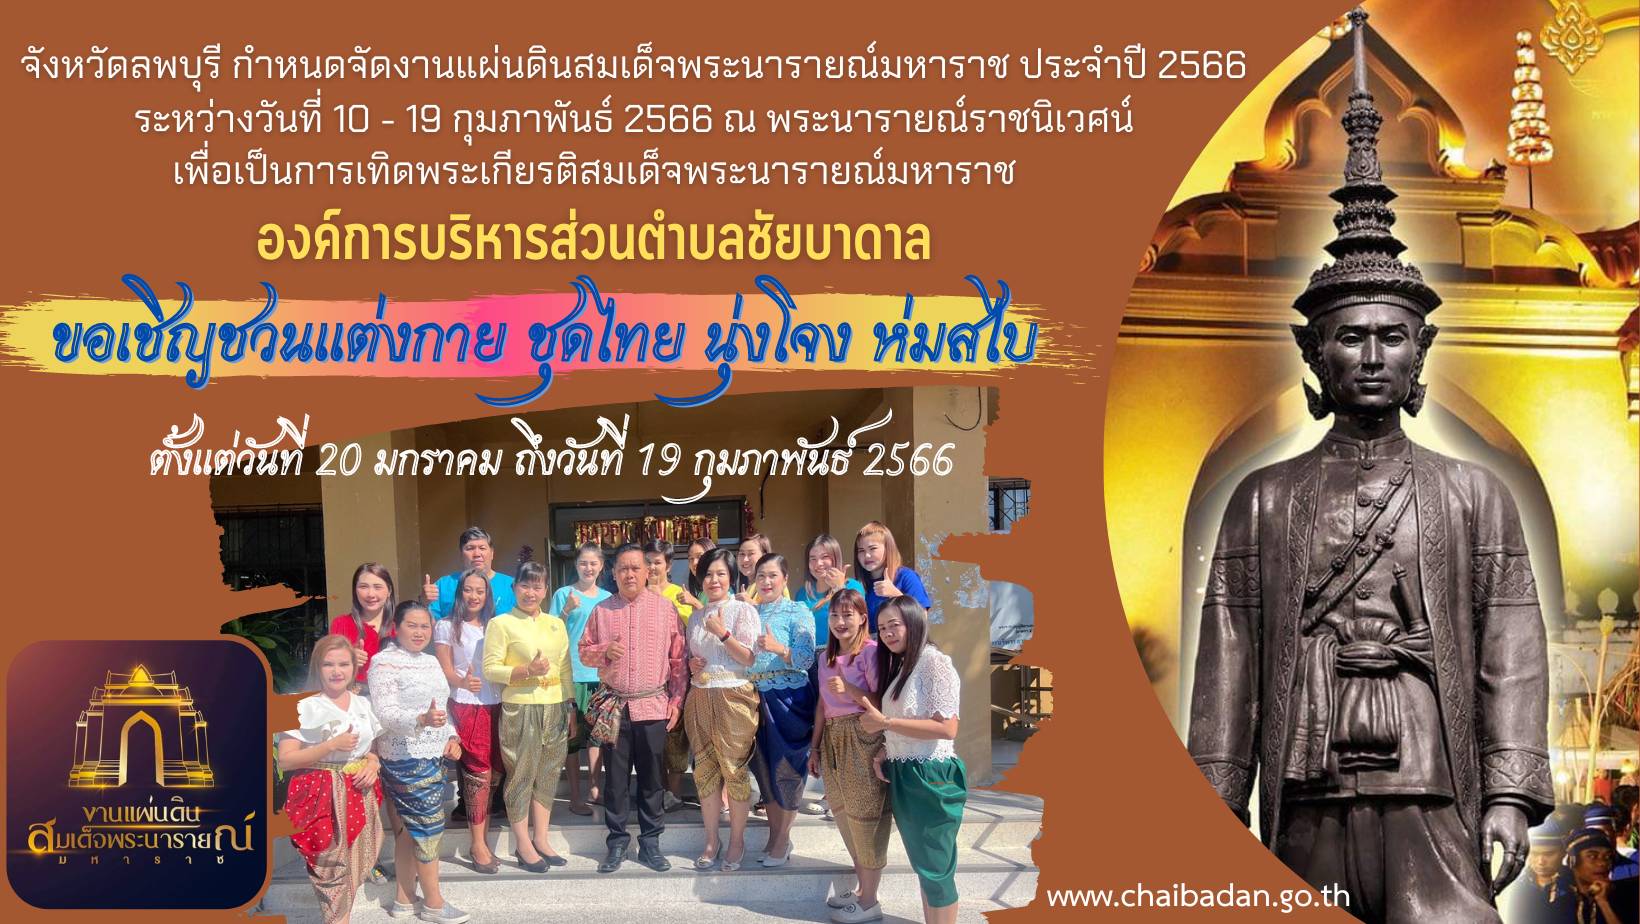 ขอเชิญชวนชาวจังหวัดลพบุรีแต่งกาย นุ่งโจง ห่มสไบ แต่งไทย ทั้งเมือง